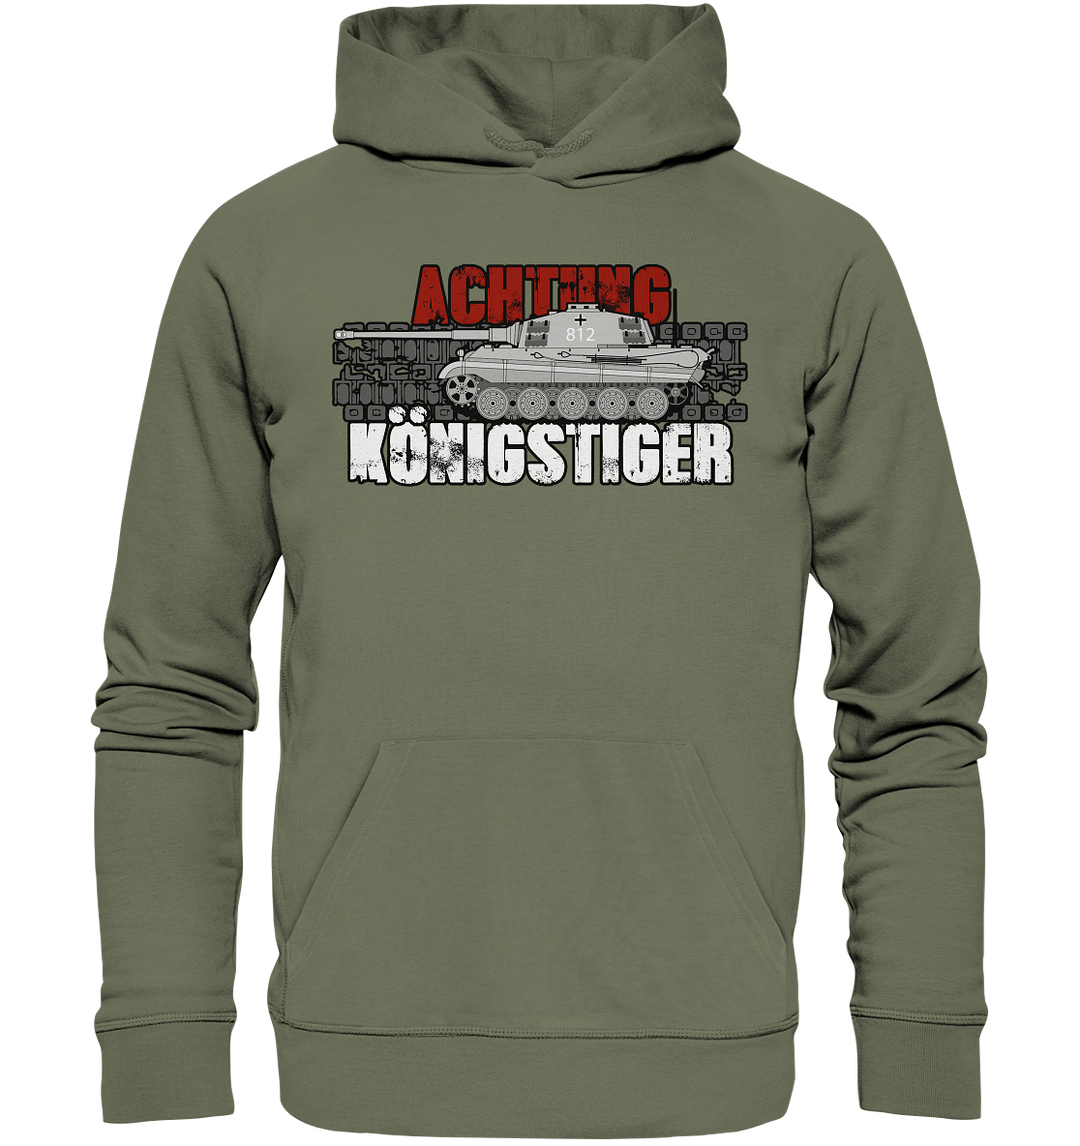 "Achtung Königstiger" - Premium Unisex Hoodie